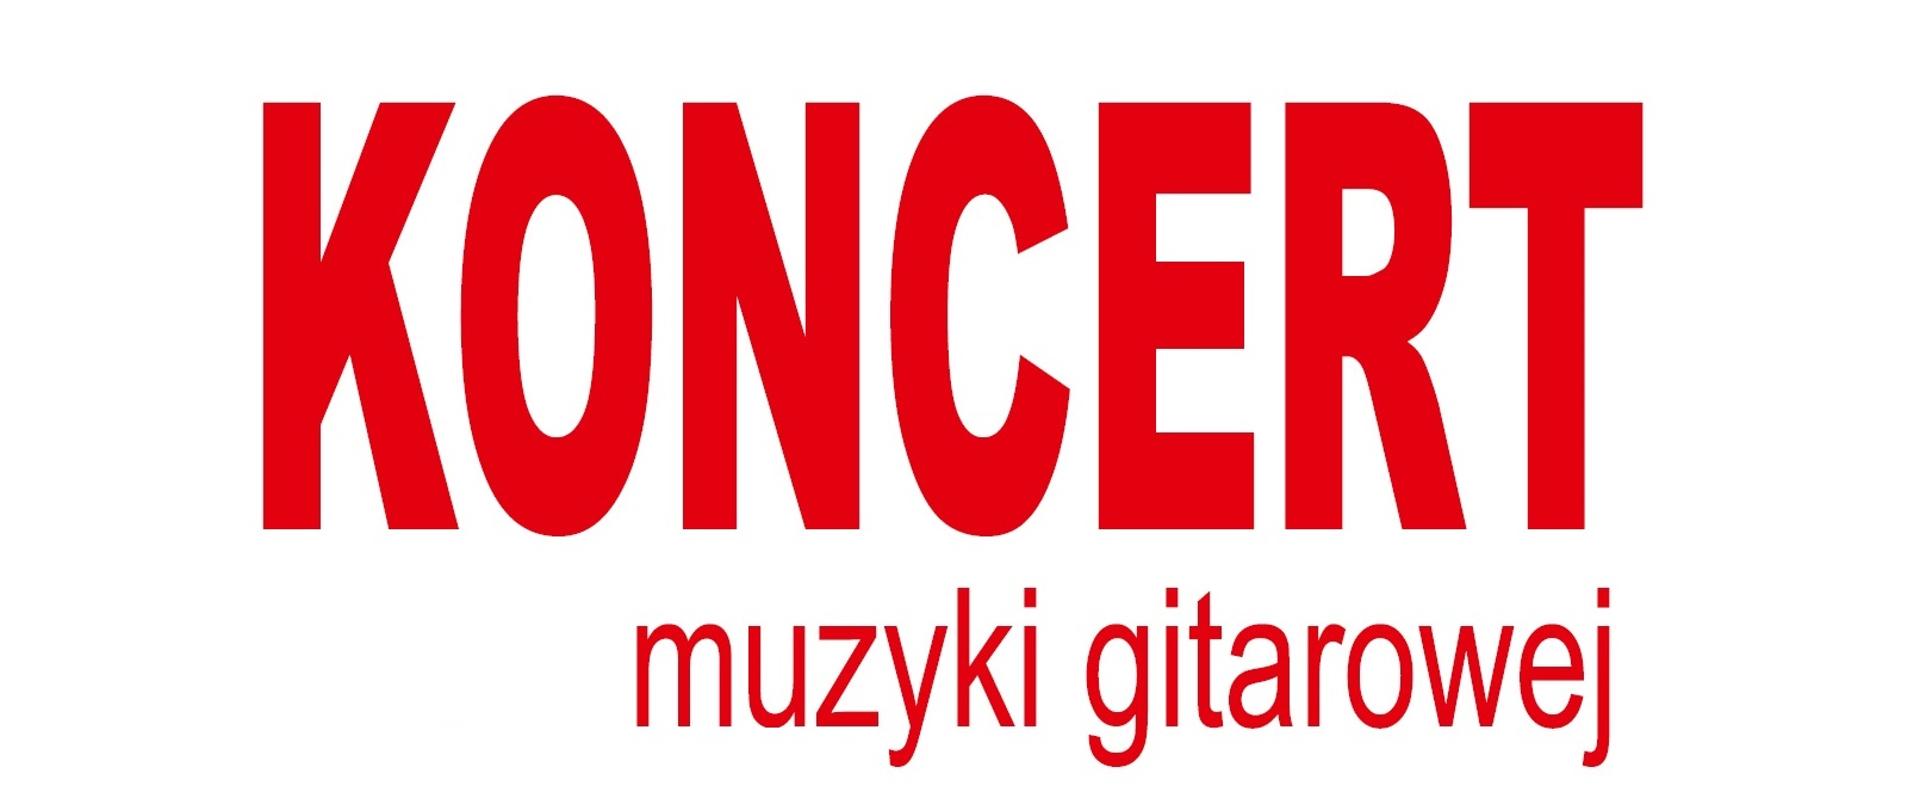 Czerwony napis "Koncert muzyki gitarowej" na białym tle